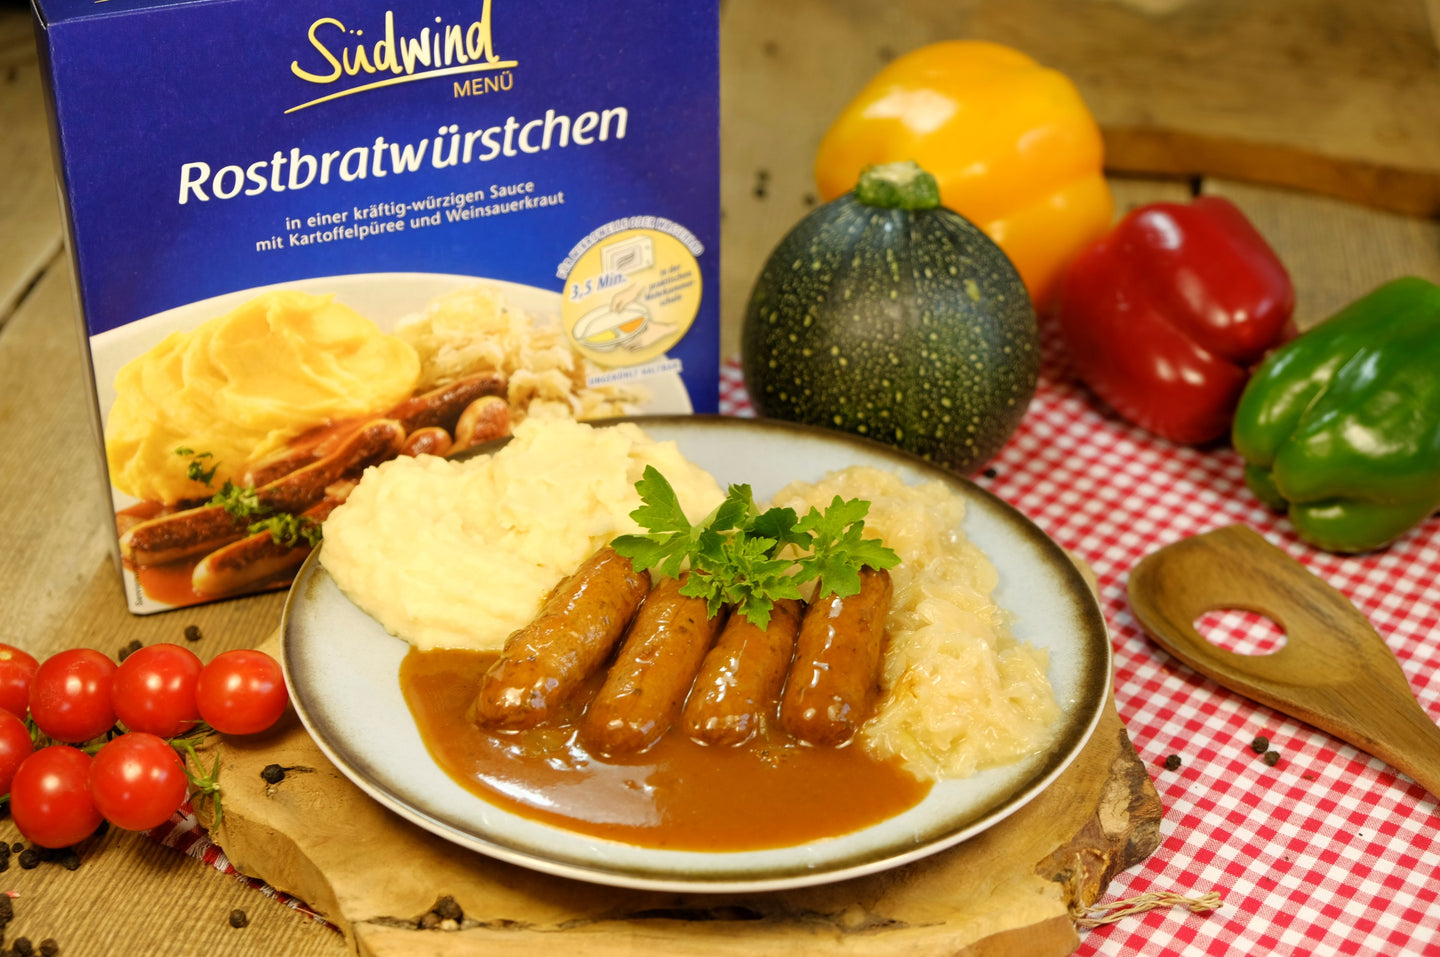 Südwind Rostbratwürstchen  in kräftig-würziger Sauce mit Kartoffelpüree und Weinsauerkraut 480g